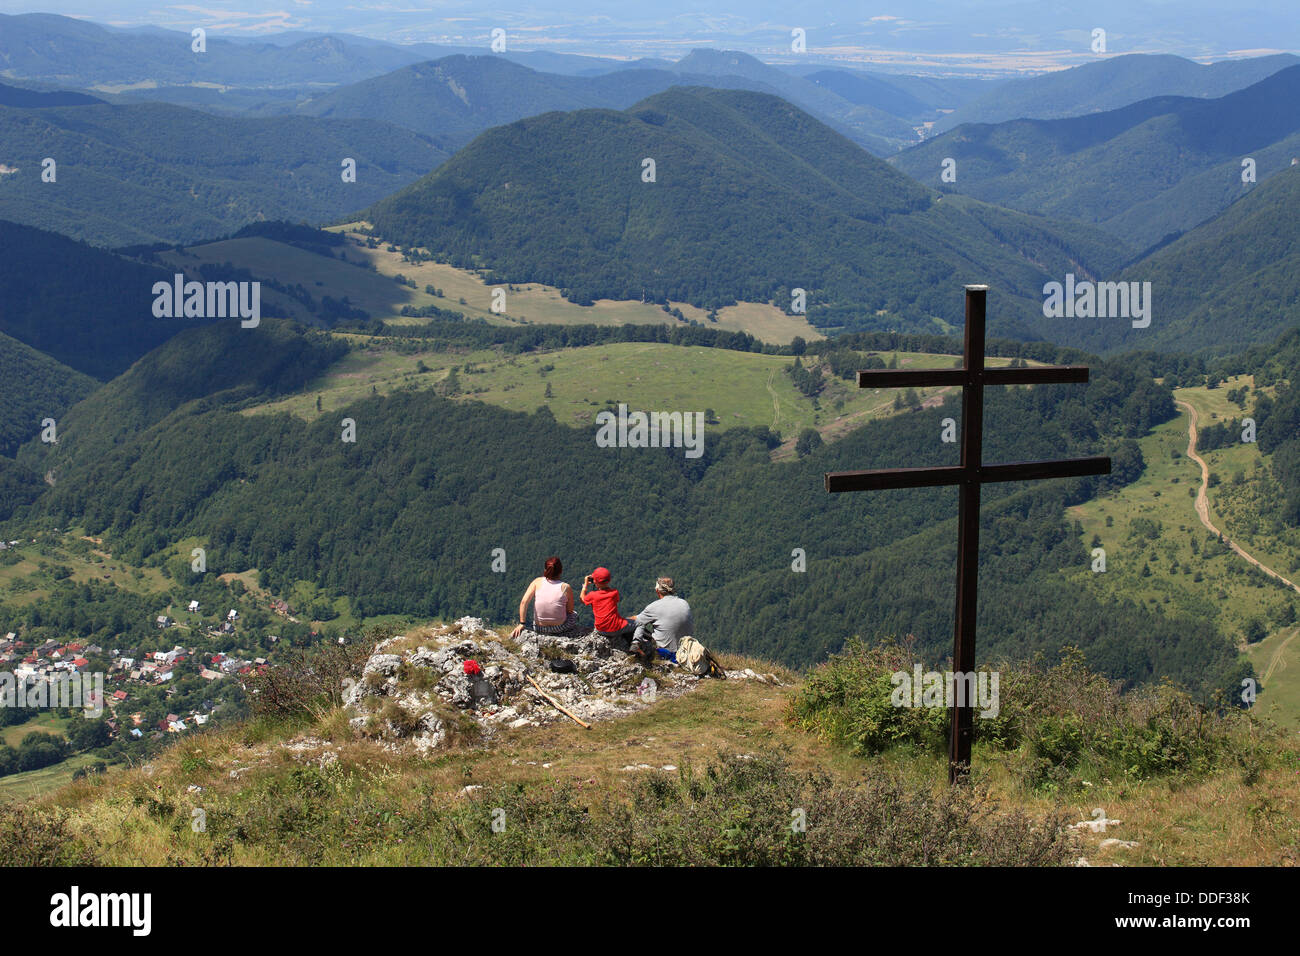 Three people looking on village Zliechov from Strazov peak, Strazovske vrchy, Slovakia. Stock Photo